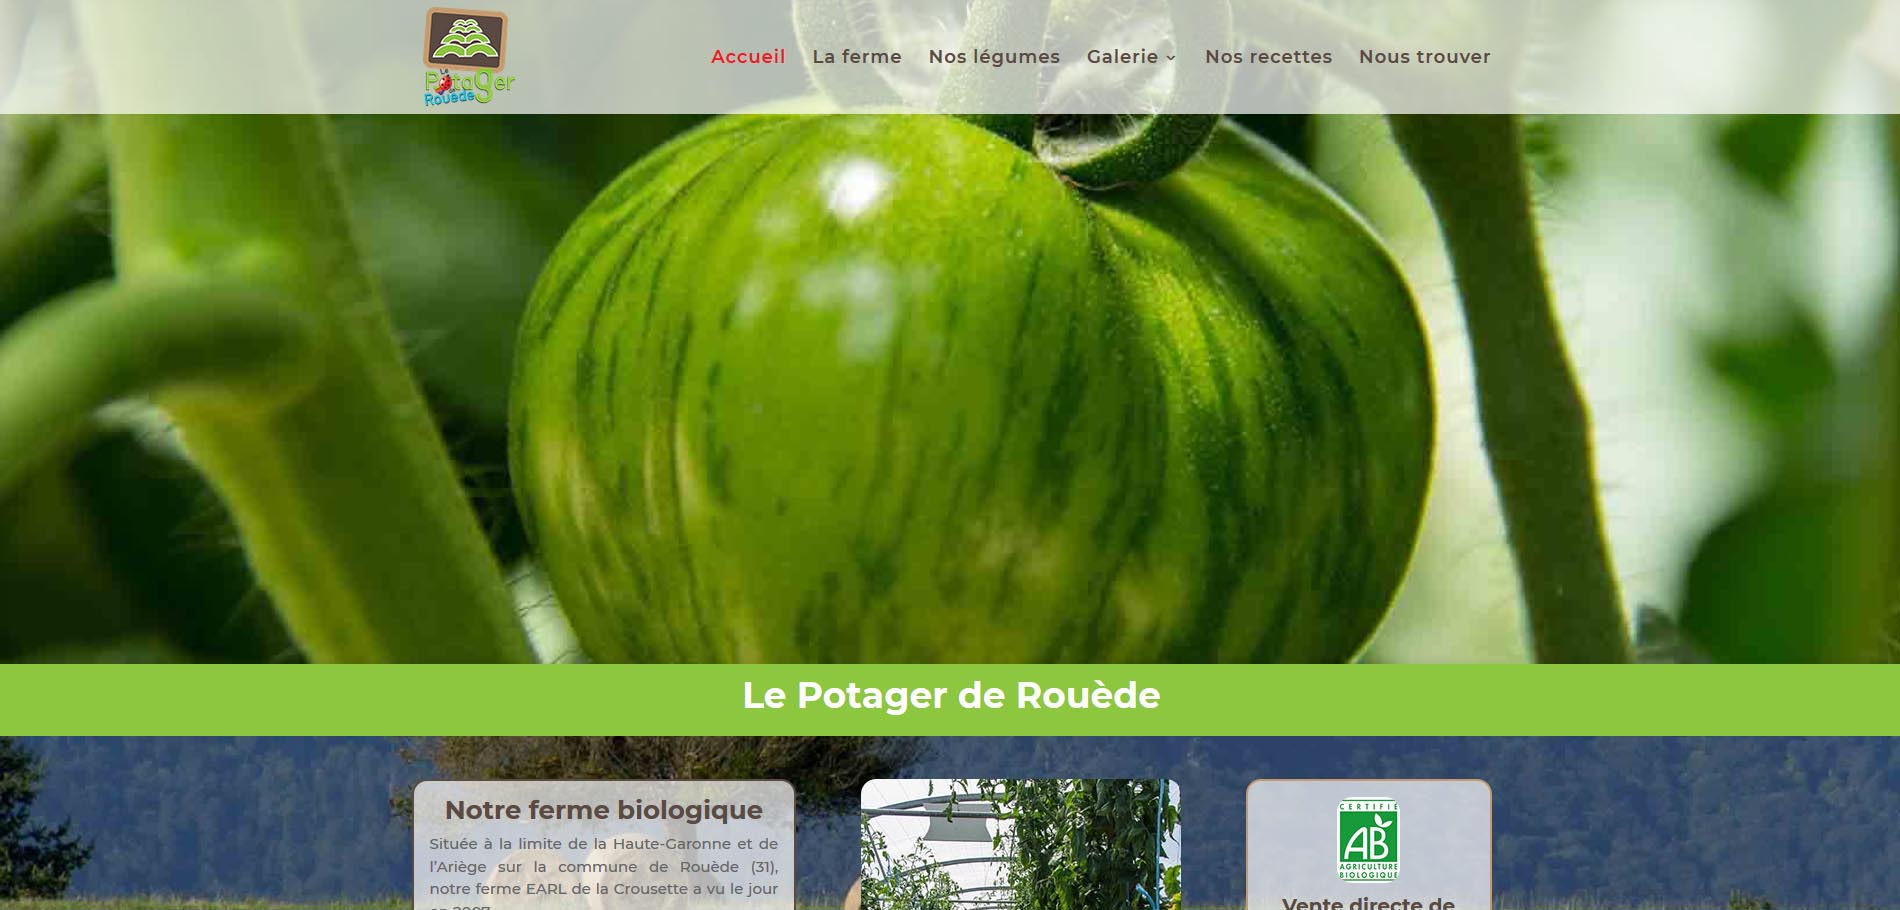 Site internet vitrine-Le Potager de Rouede-Maraicher biologique-julienbarbat-communication digitale-creation site internet-referencement